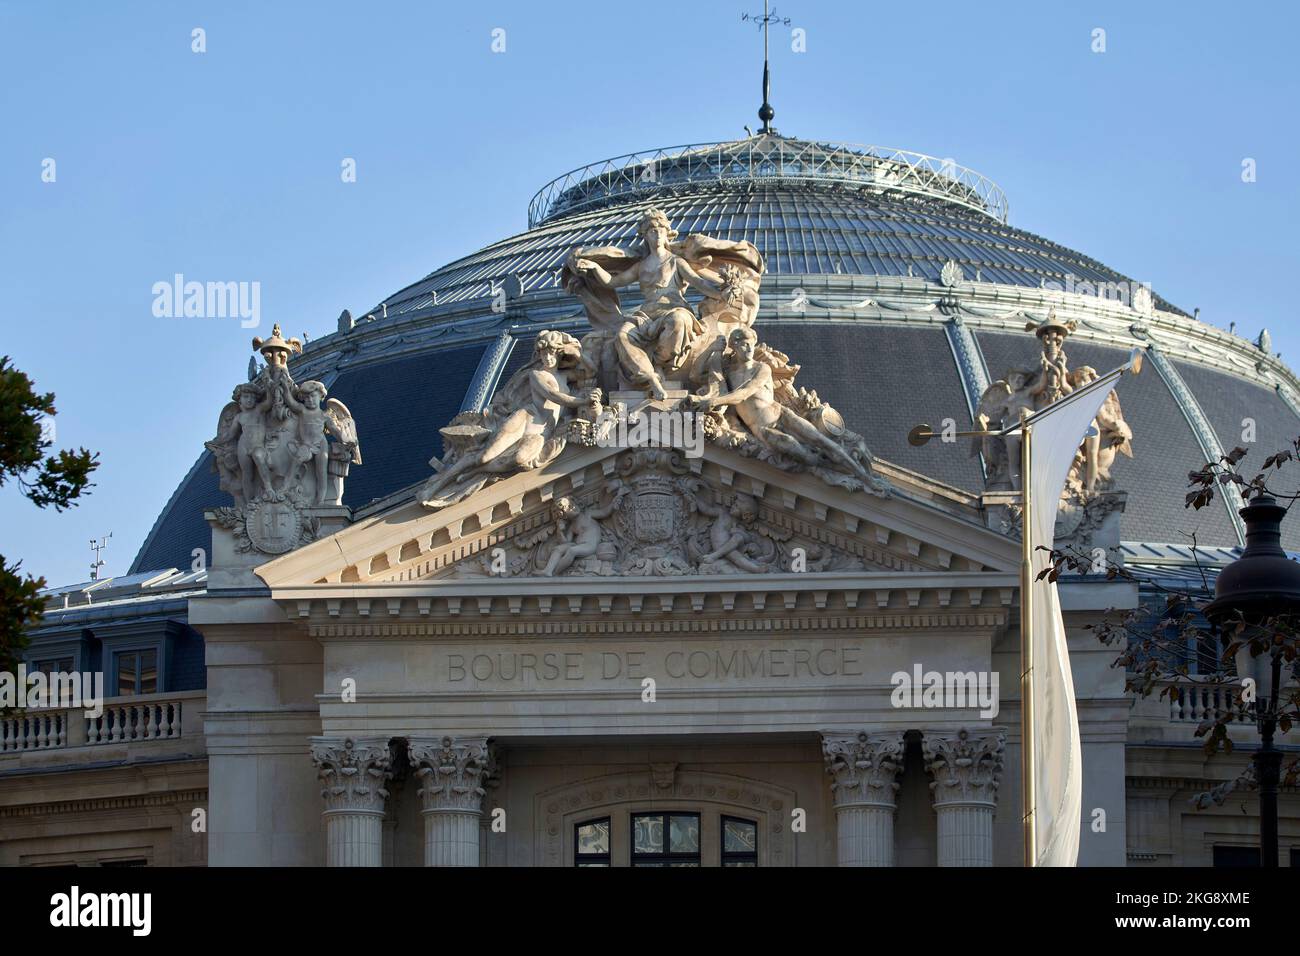 Blick auf die Straße. Bourse de Commerce, Paris, Frankreich. Architekt: Tadao Ando , 2021. Stockfoto